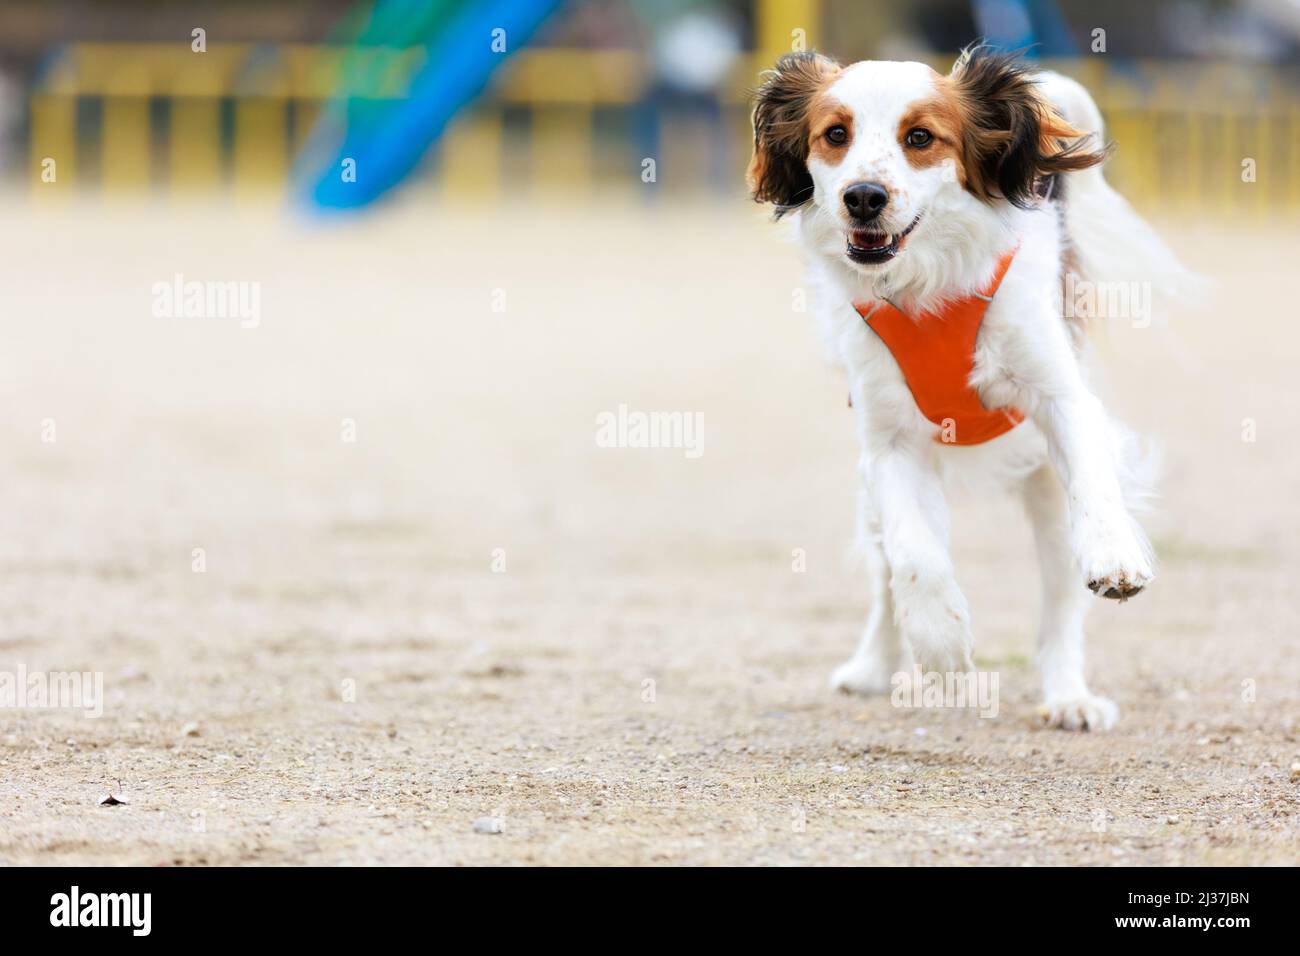 Fröhlicher reinrassiger Hund kooiker läuft auf die Kamera zu. Stockfoto